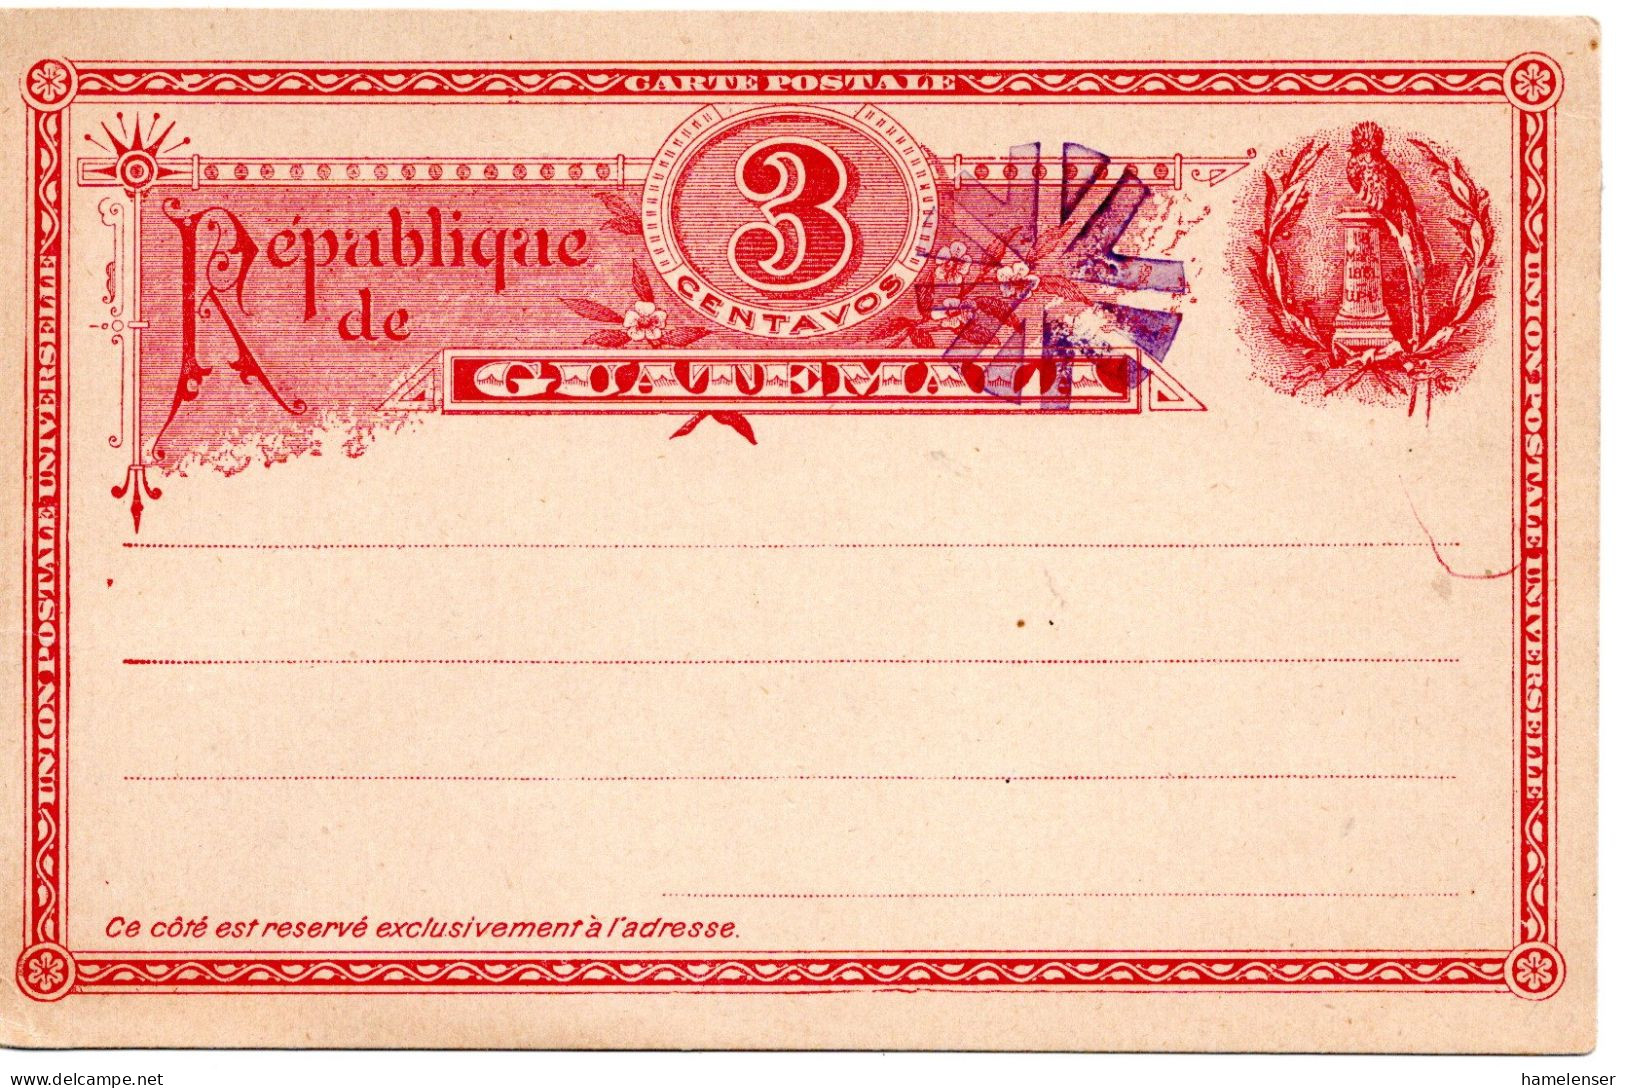 78425 - Guatemala - 1897 - 3c GAKte, Stummer Stpl, Nicht Gelaufen - Guatemala